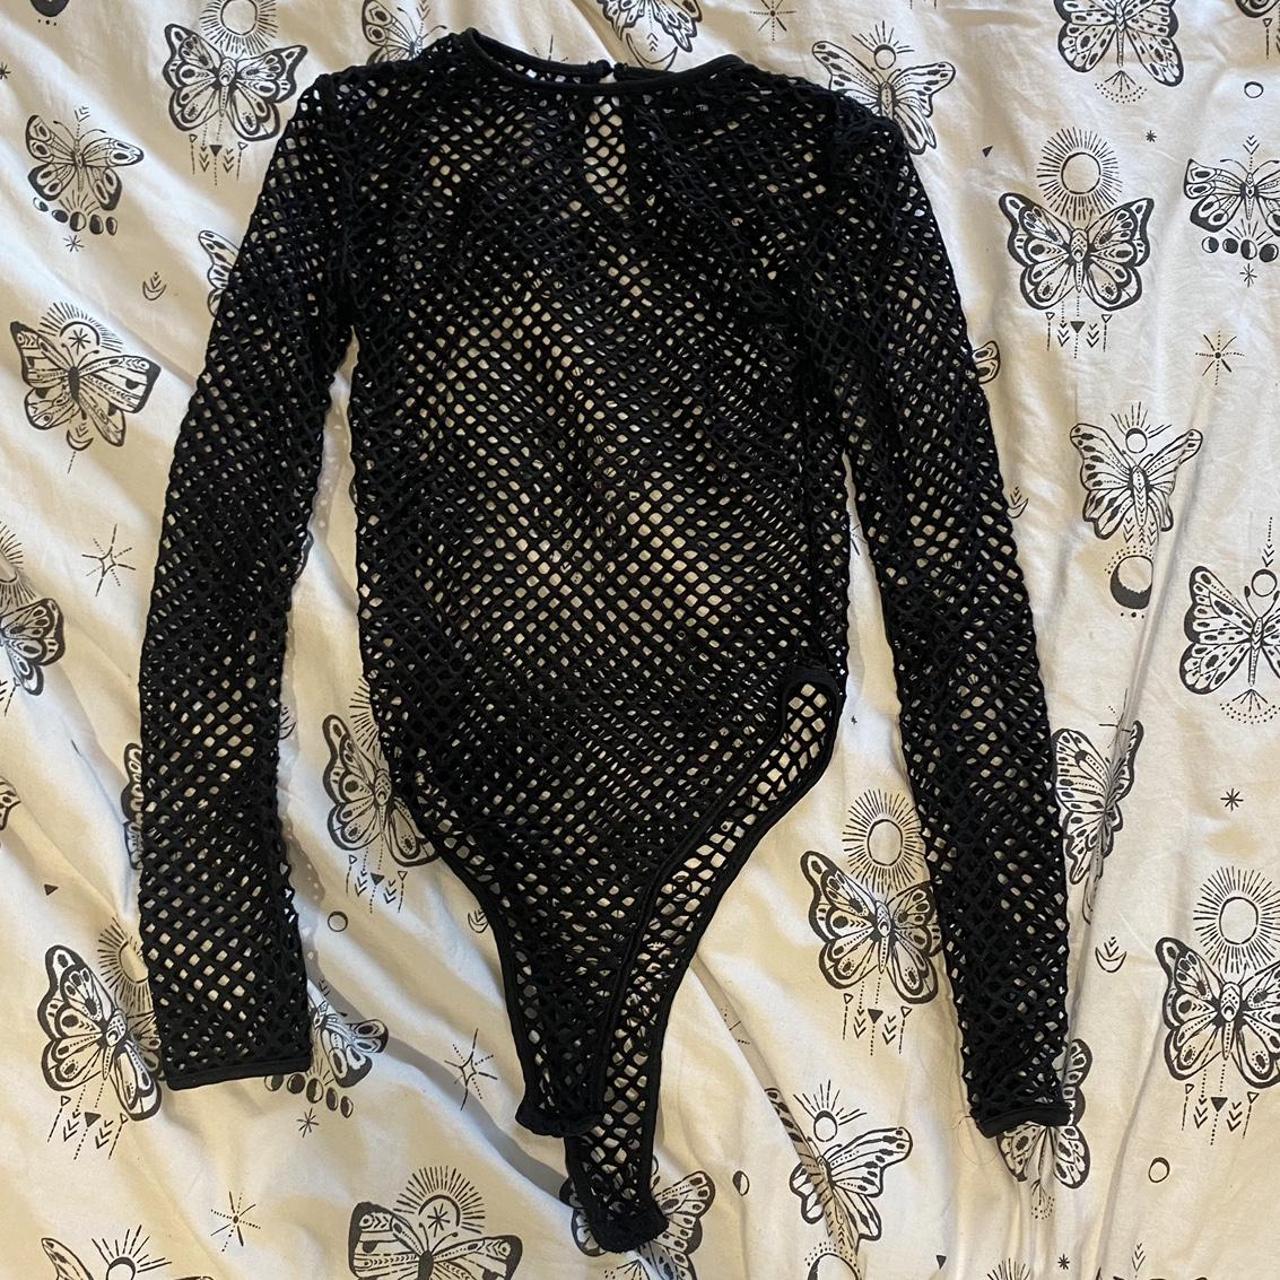 Thick fishnet body suit Details: fishnet body suit... - Depop